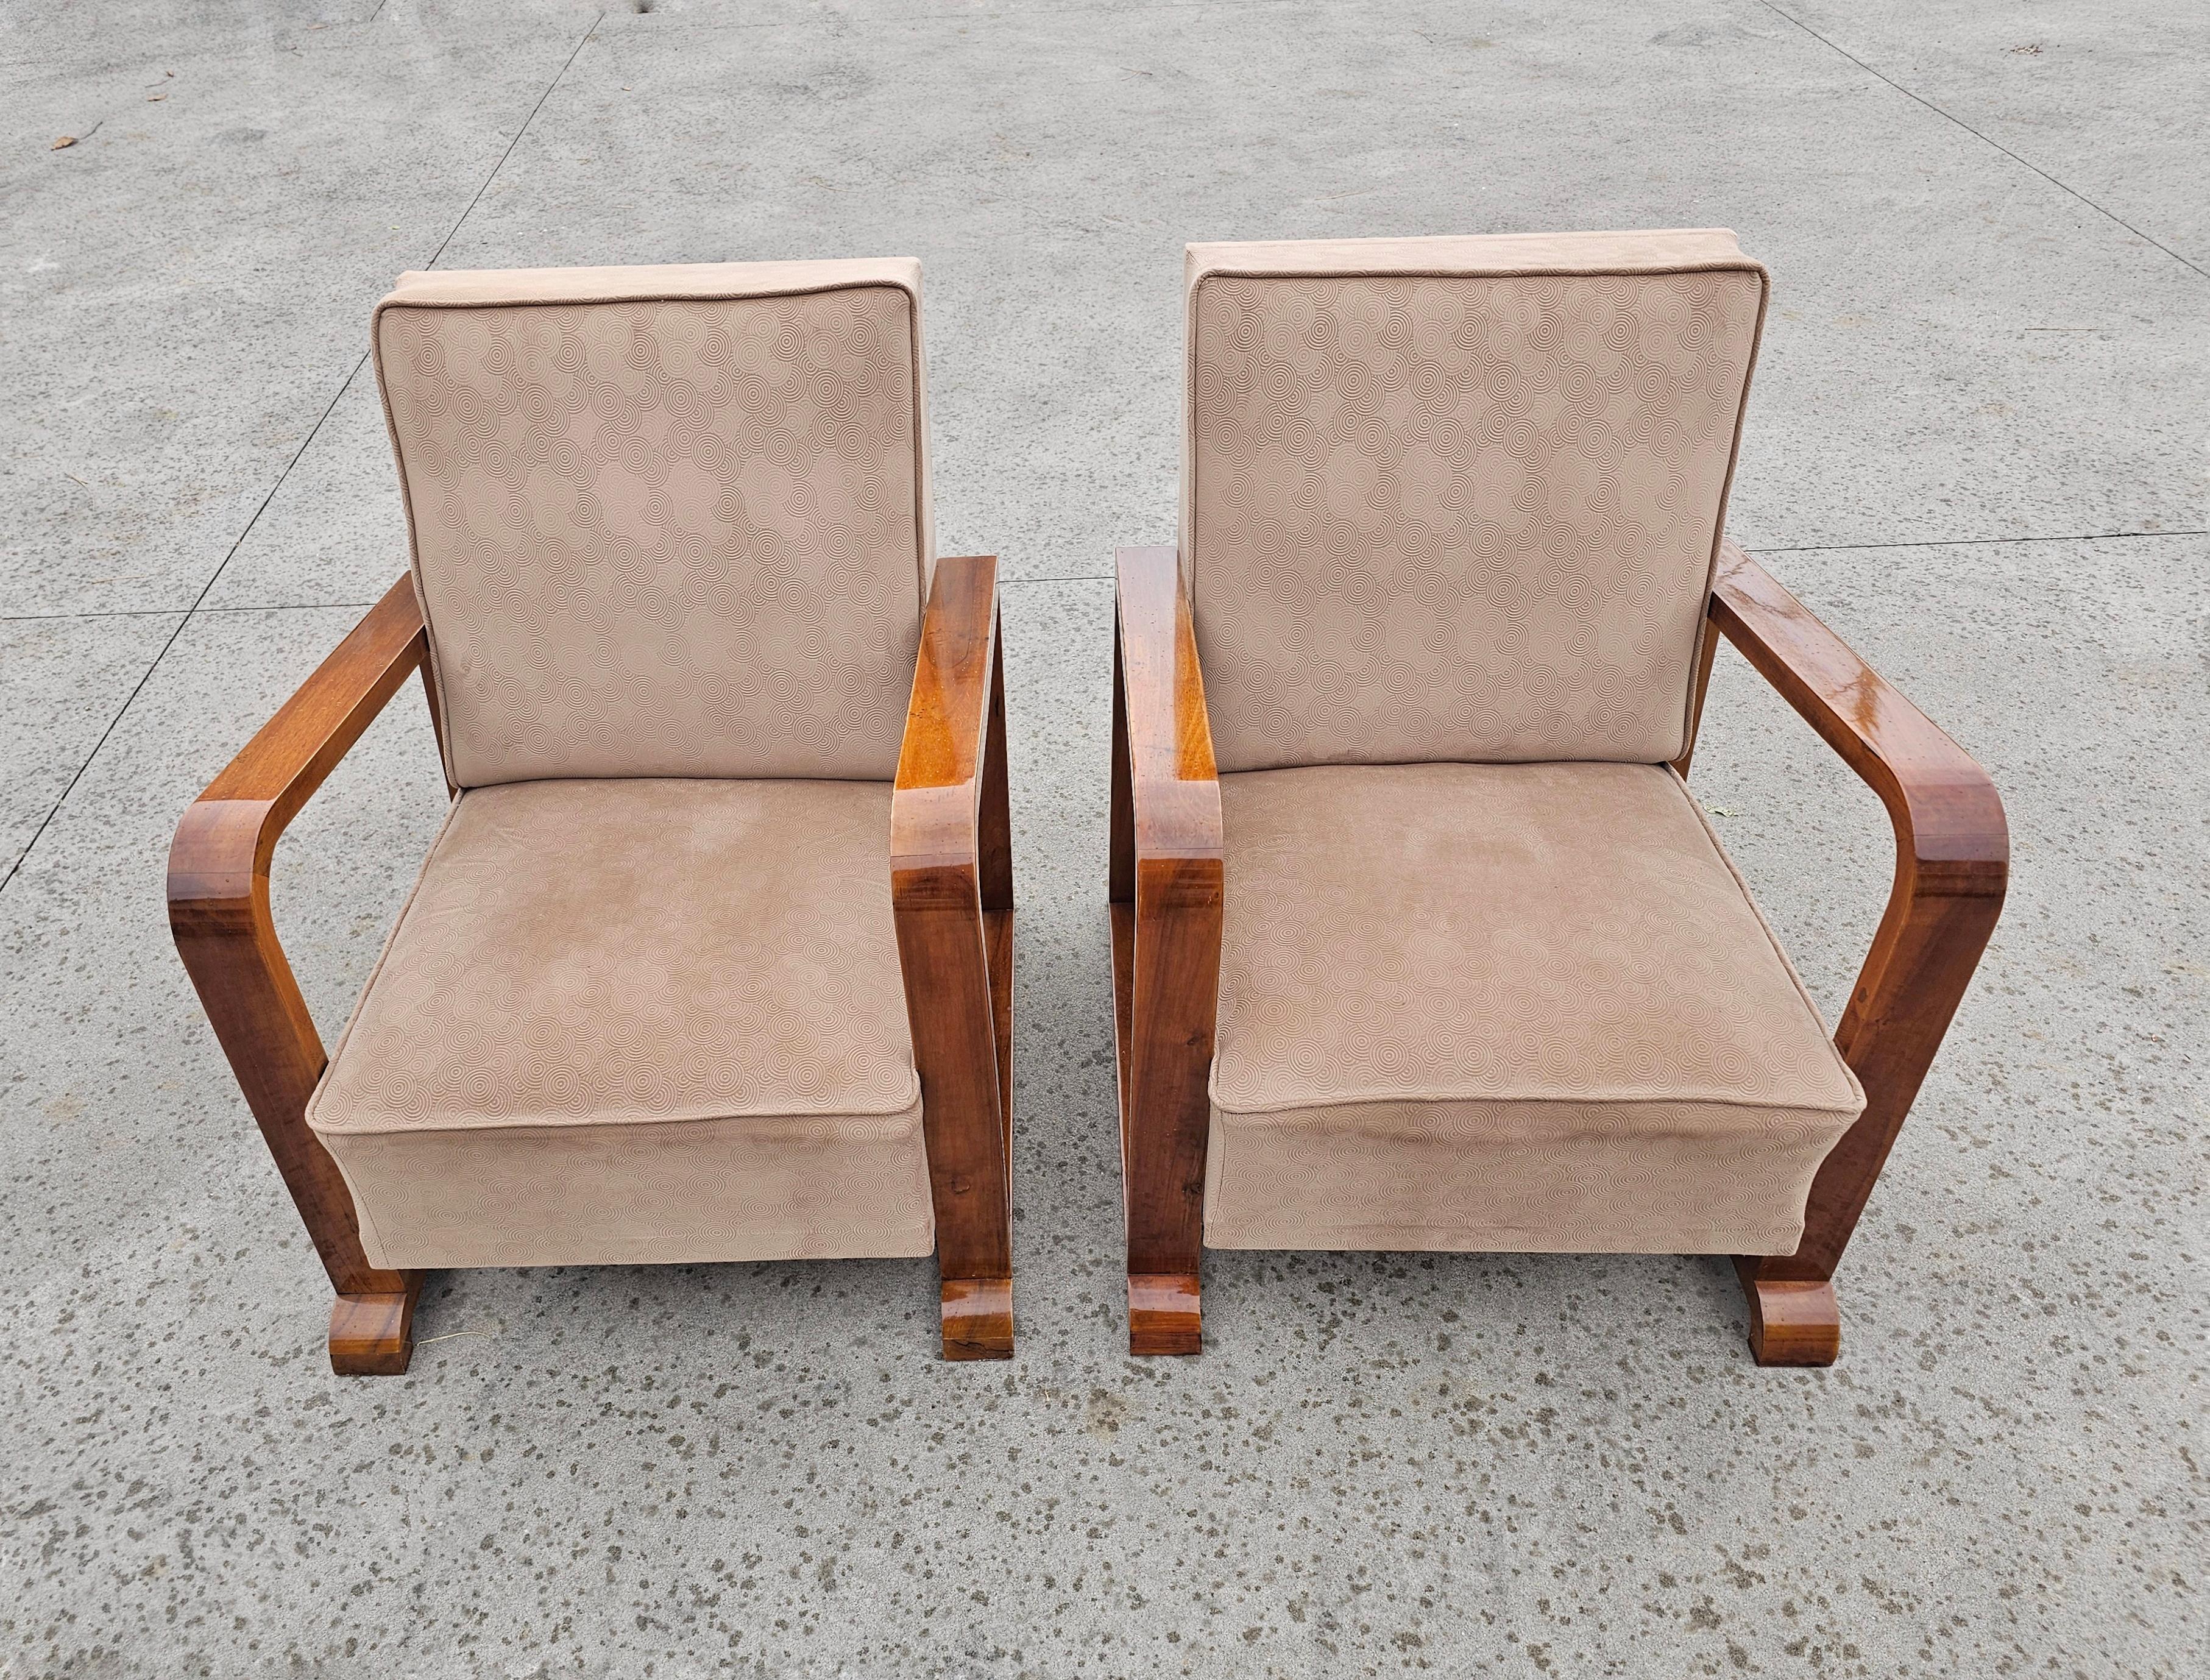 In diesem Angebot finden Sie auffällige Art Deco Sessel aus massivem Nussbaumholz mit schöner Maserung. Die Armlehne weist eine außergewöhnliche Form auf, die bei Art-Déco-Sesseln selten zu finden ist. Sie wurden vor einem Jahr renoviert (laut dem